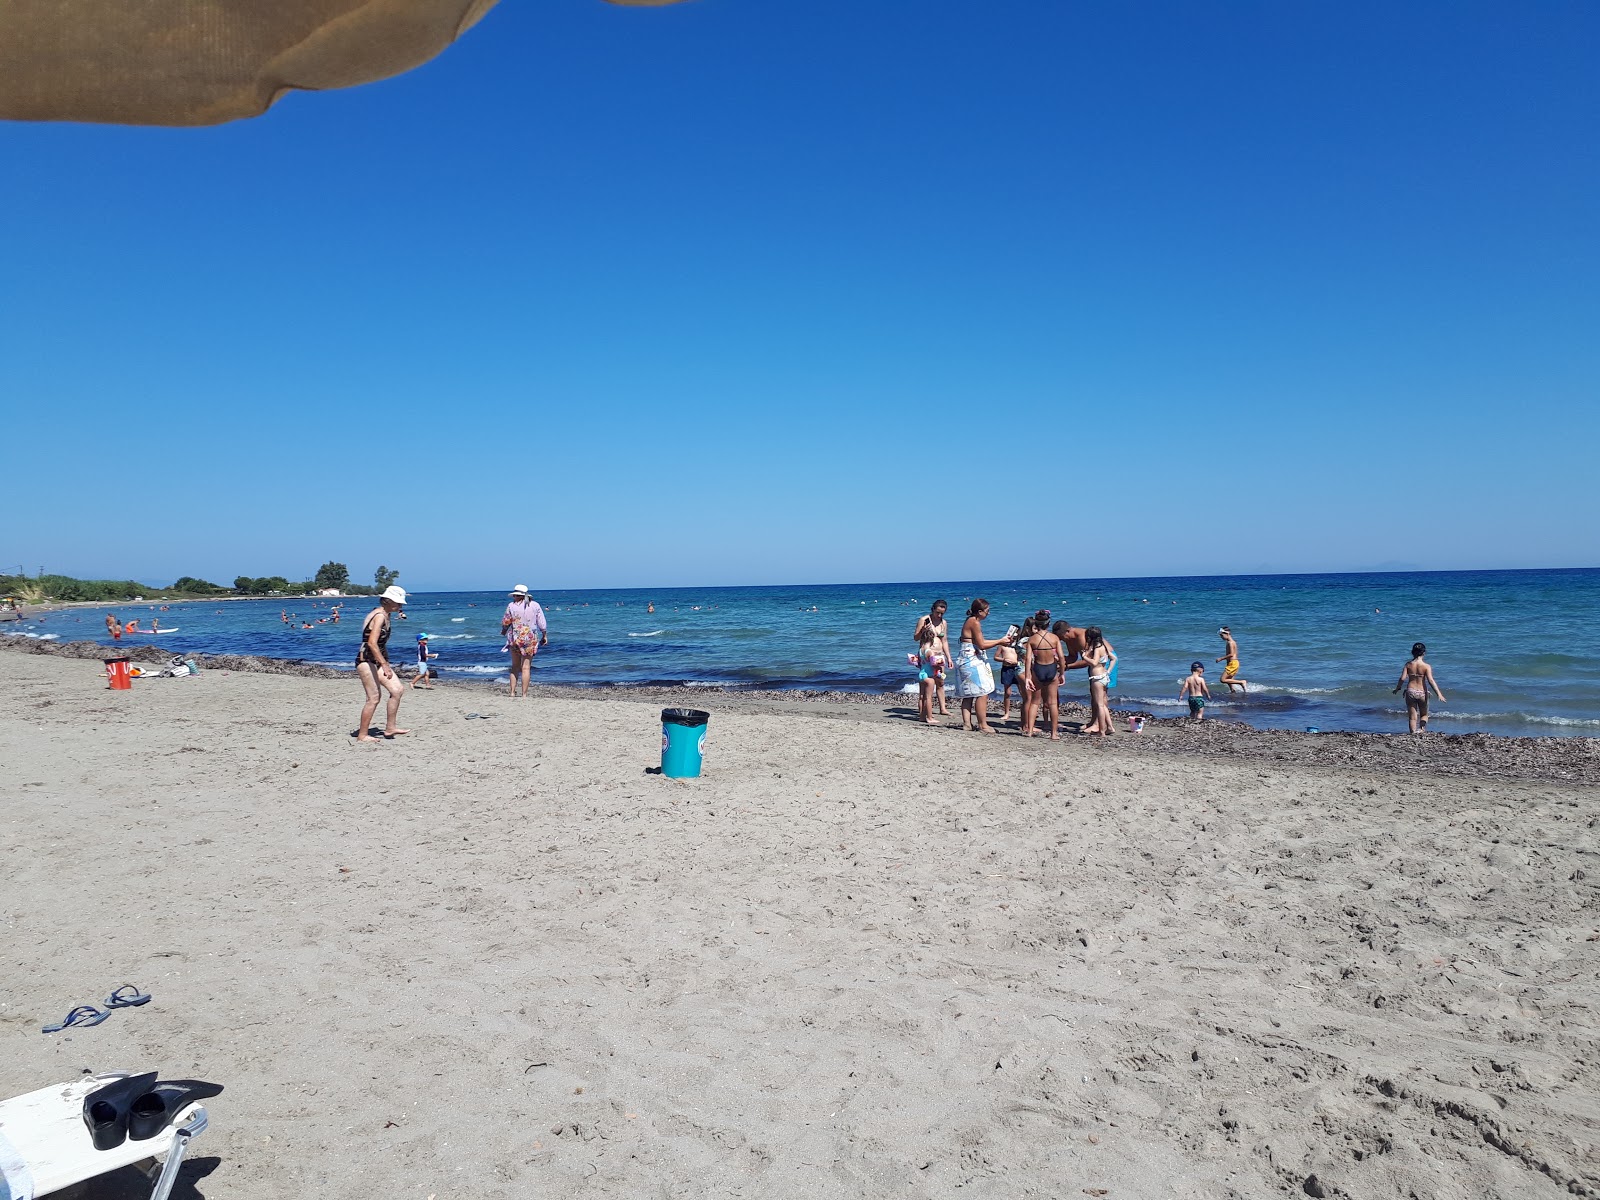 Photo de Kyllini beach - endroit populaire parmi les connaisseurs de la détente